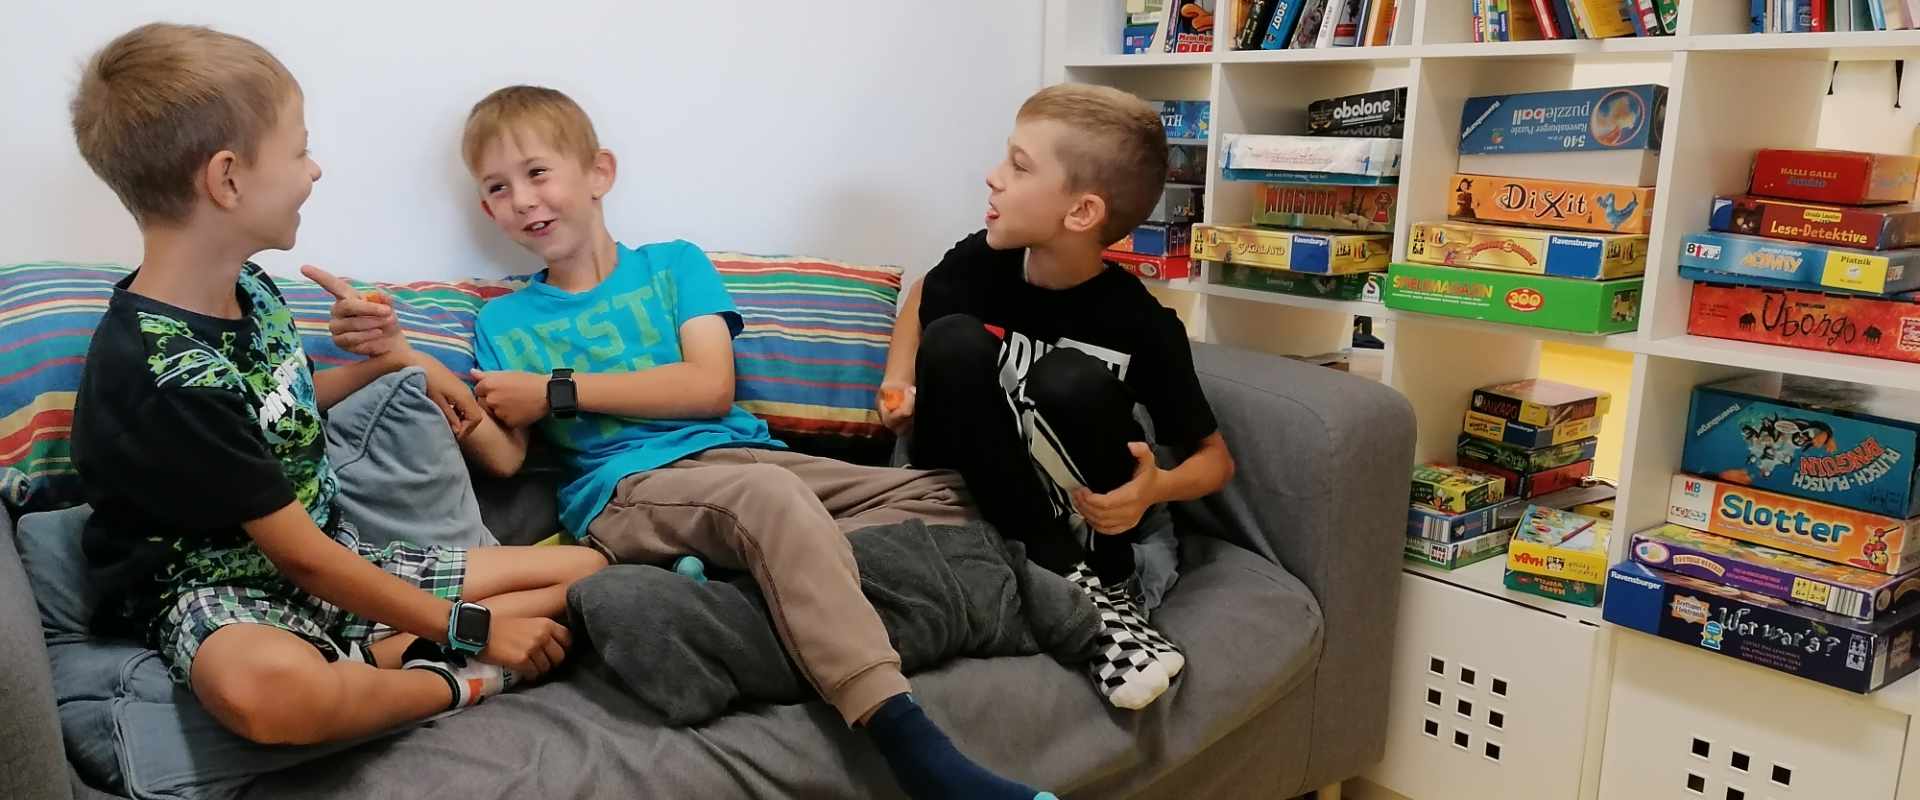 Drei Jungs beim Diskutieren auf der Couch